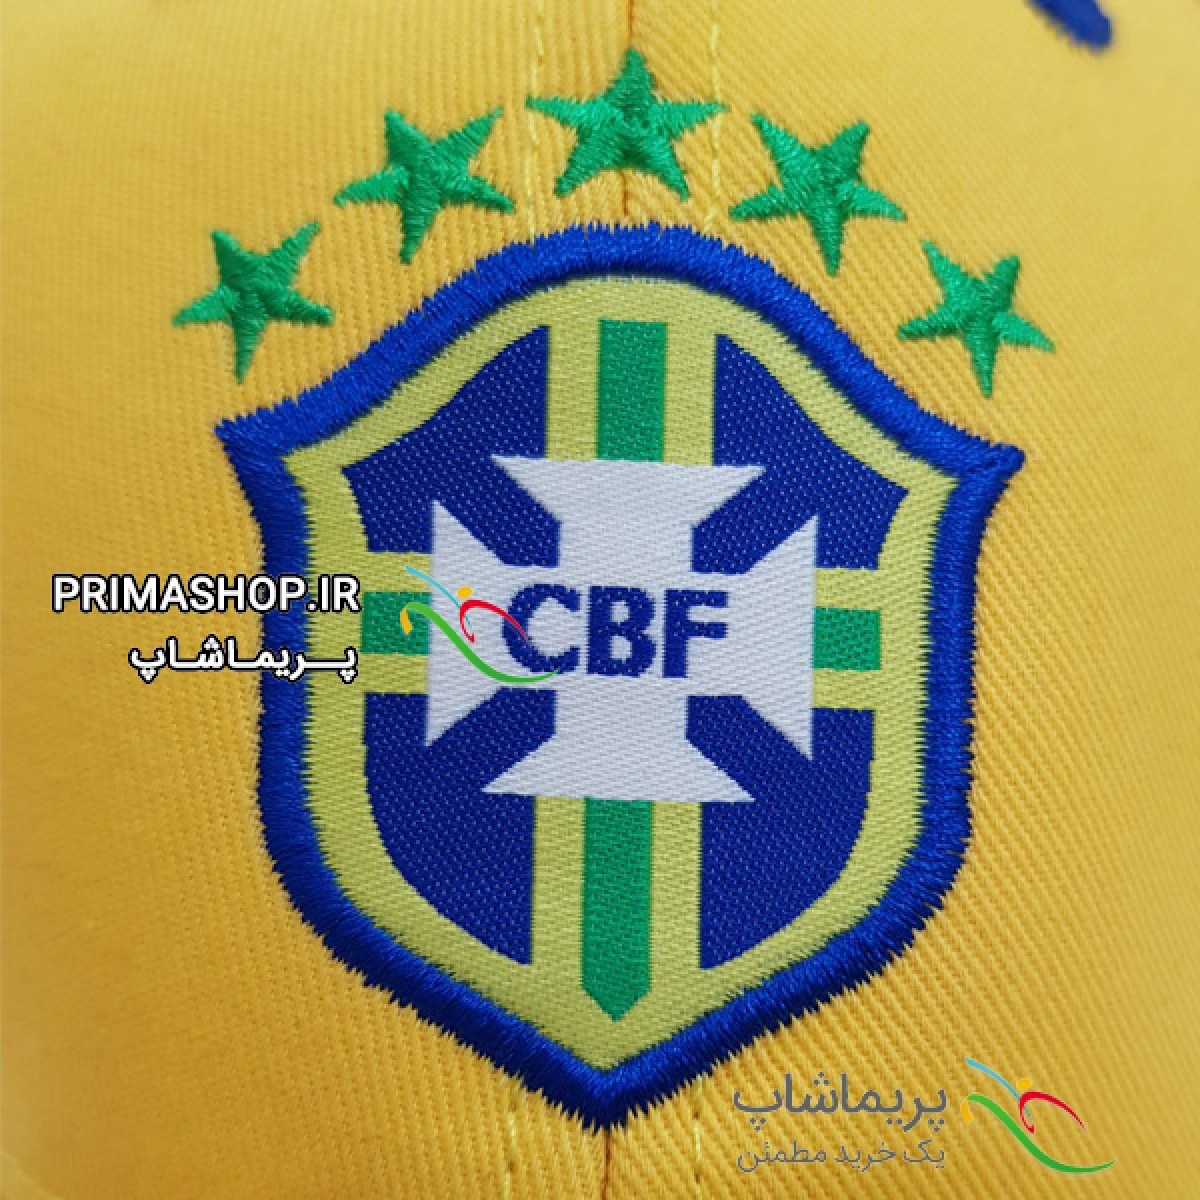 کلاه هواداری برزیل زرد